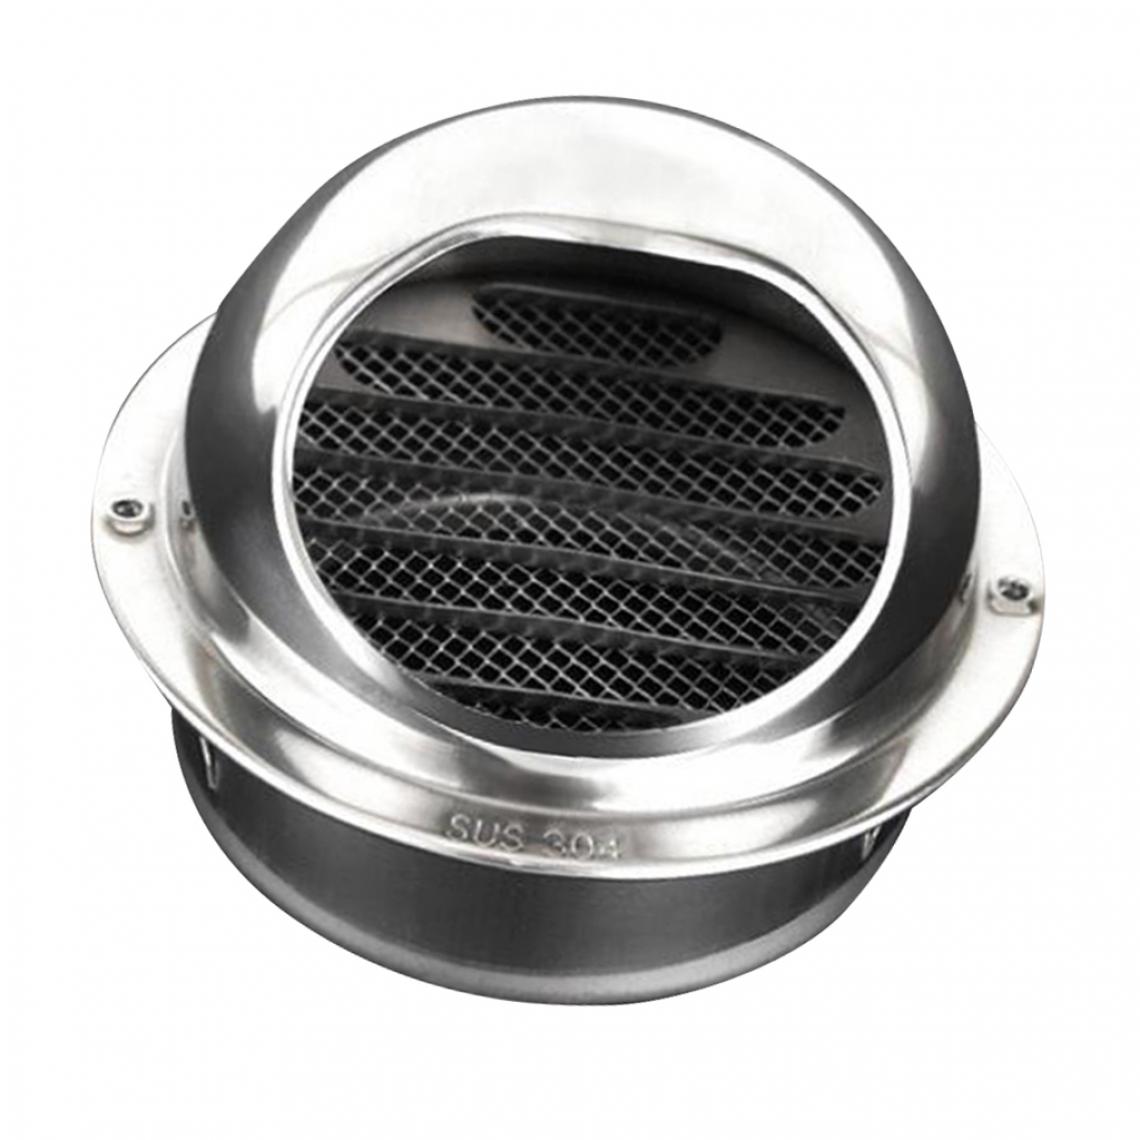 marque generique - Grille de ventilation ronde en inox pour extracteur - Taureau 10cm - Kitchenette